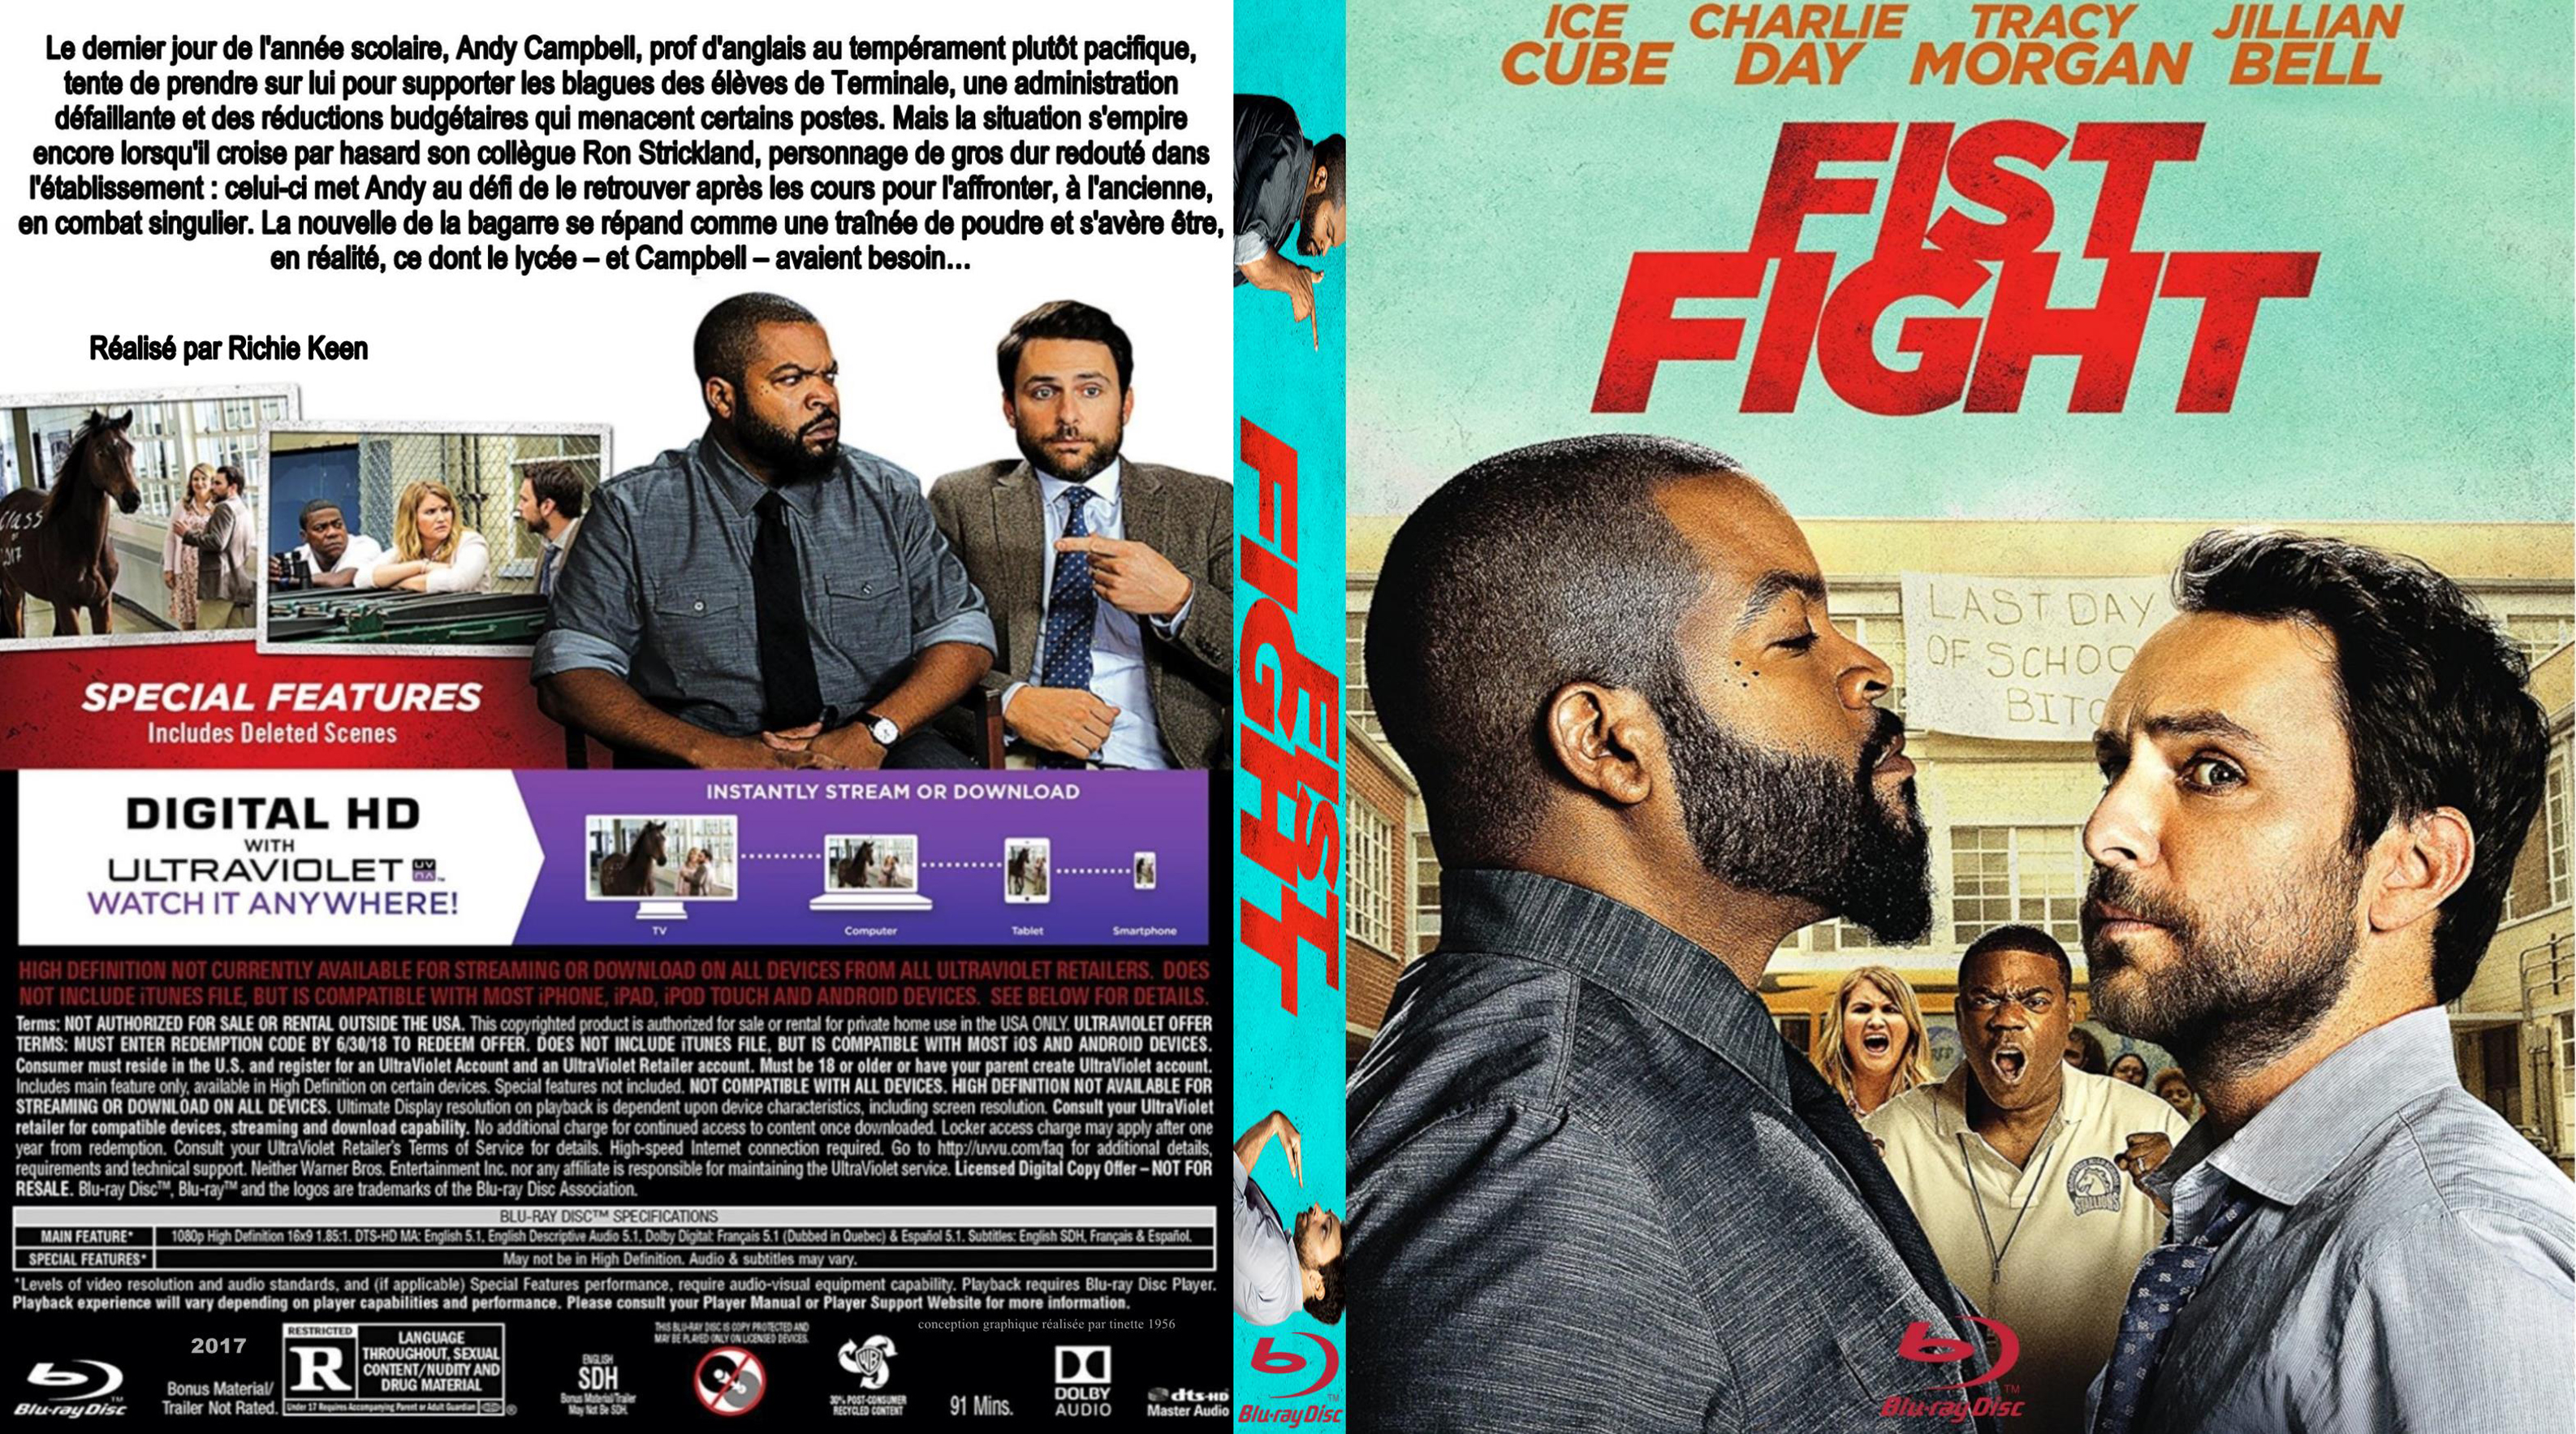 Jaquette DVD Fist fight custom (BLU-RAY)